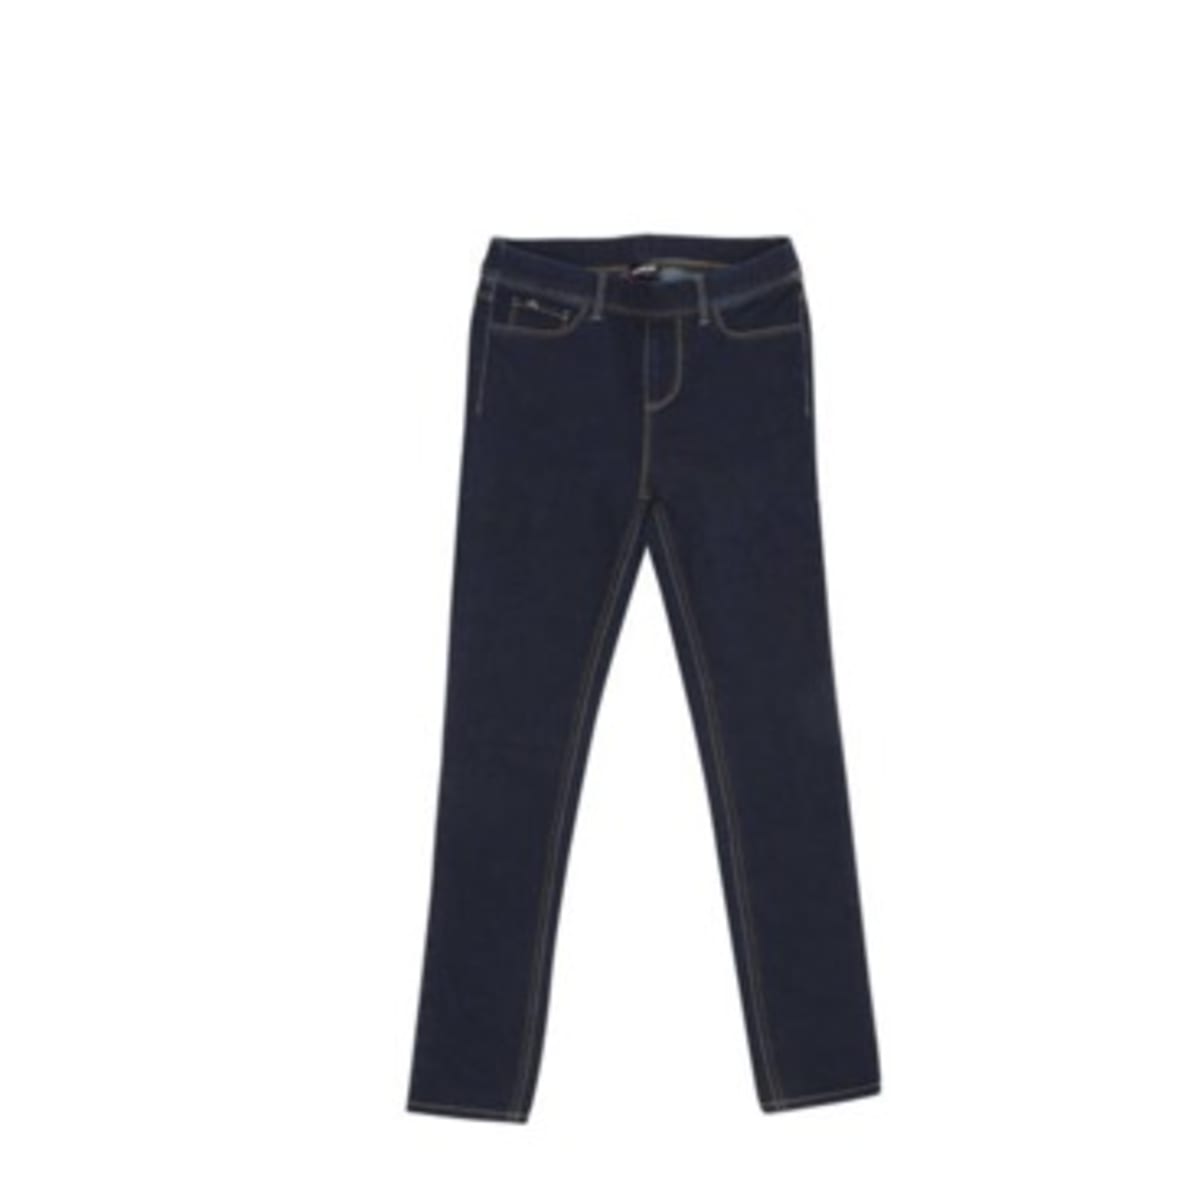 Jordache Pull-on Girls Jeans Jegging: Dark Blue